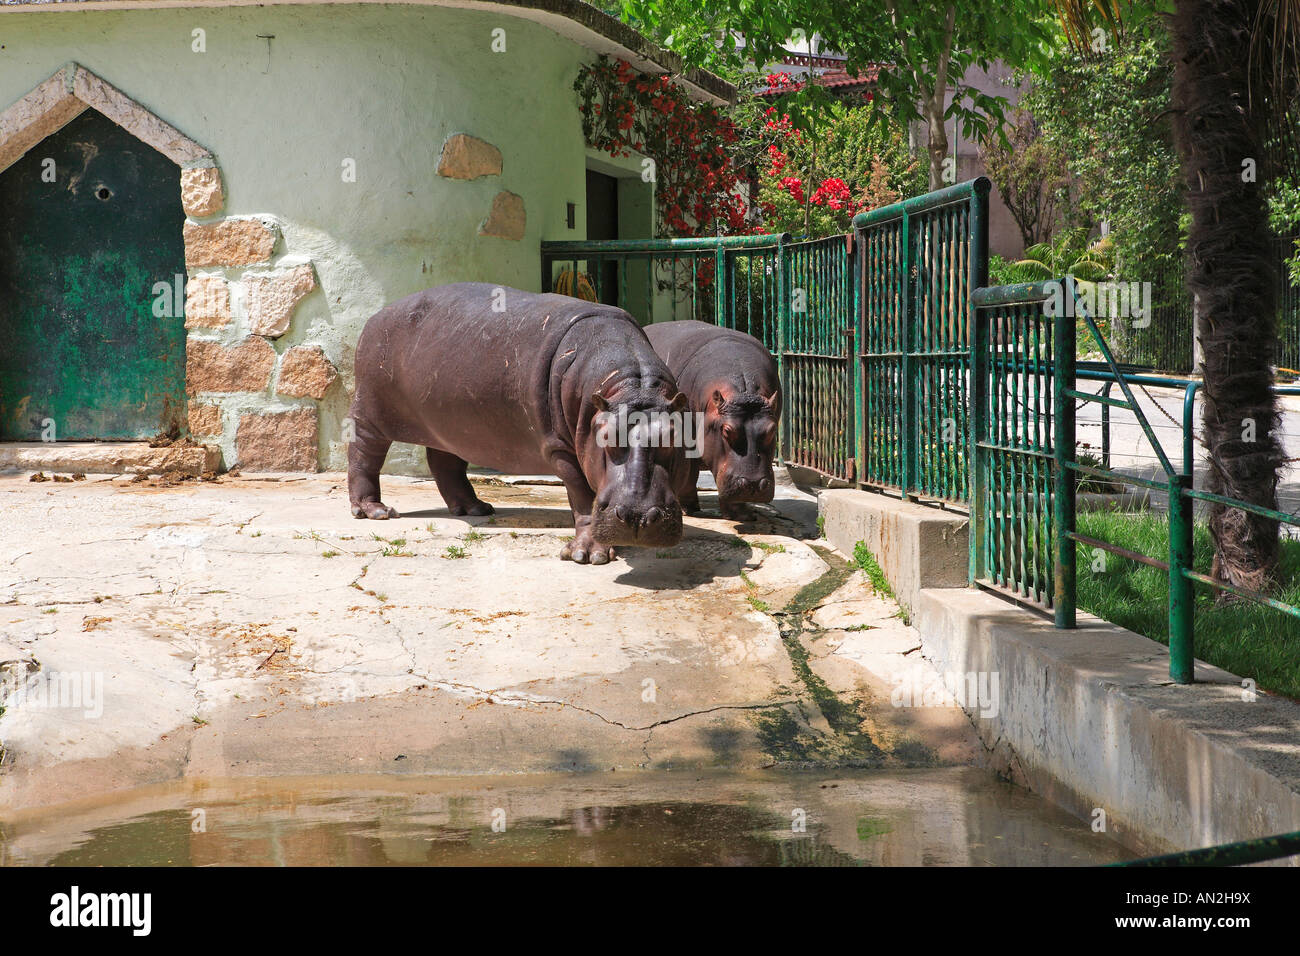 Portugal, Lisbonne, Zoo, hippopotames Banque D'Images